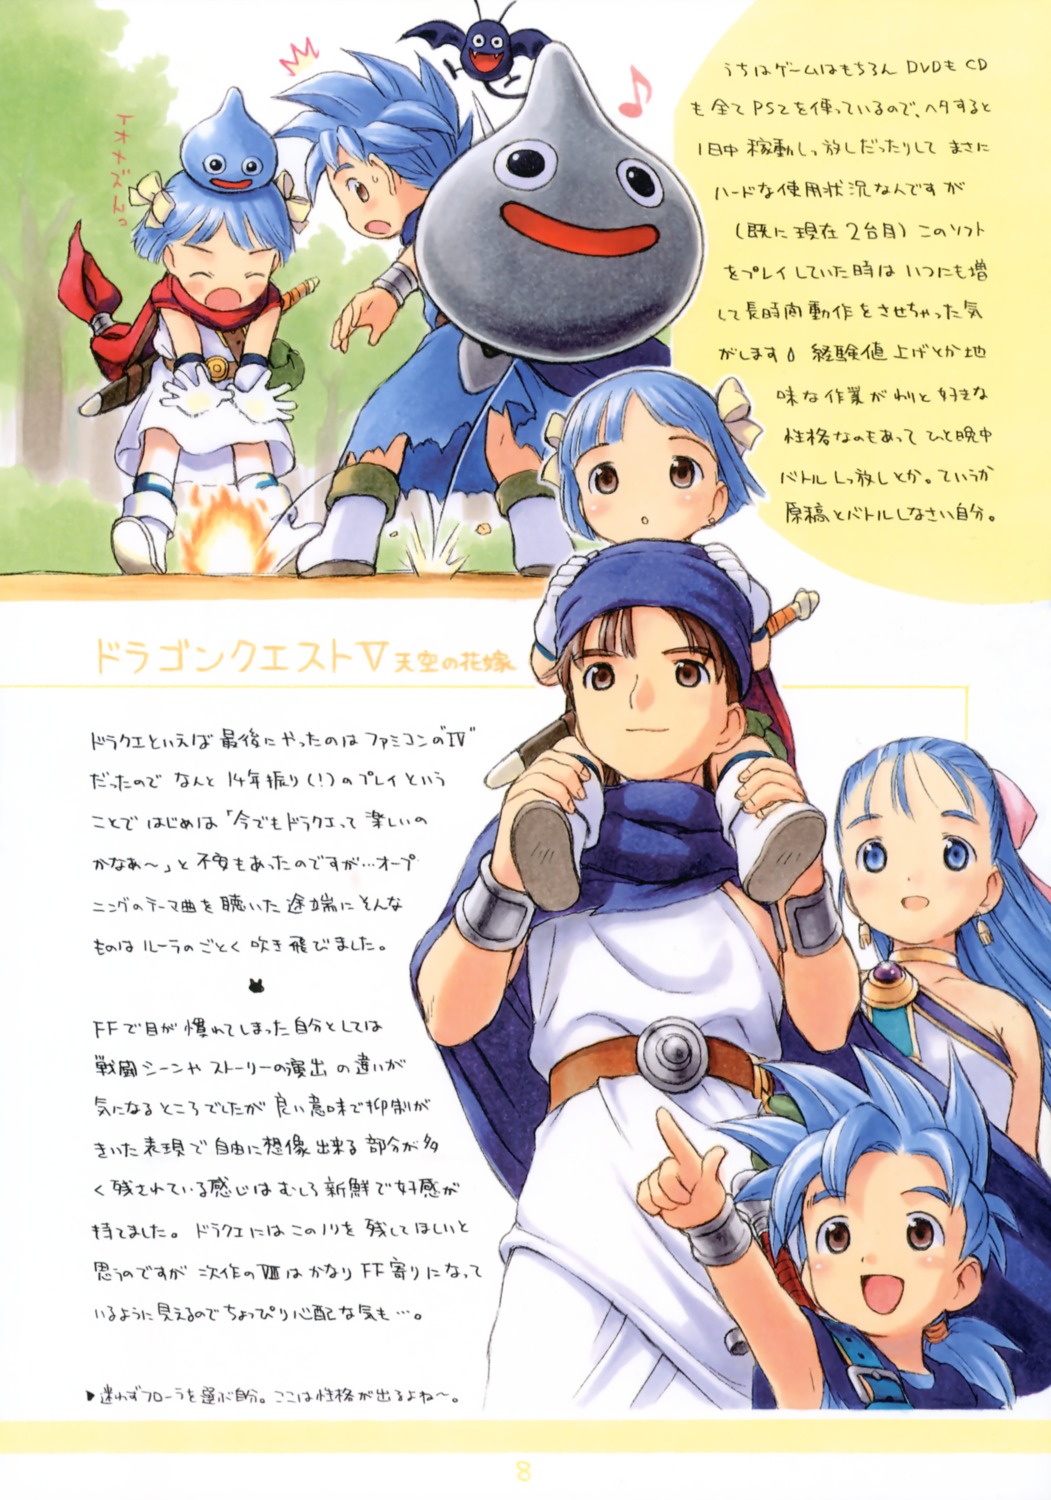 Yug Dragon Quest Dragon Quest V Flora Floras Daughter Floras Son Hero